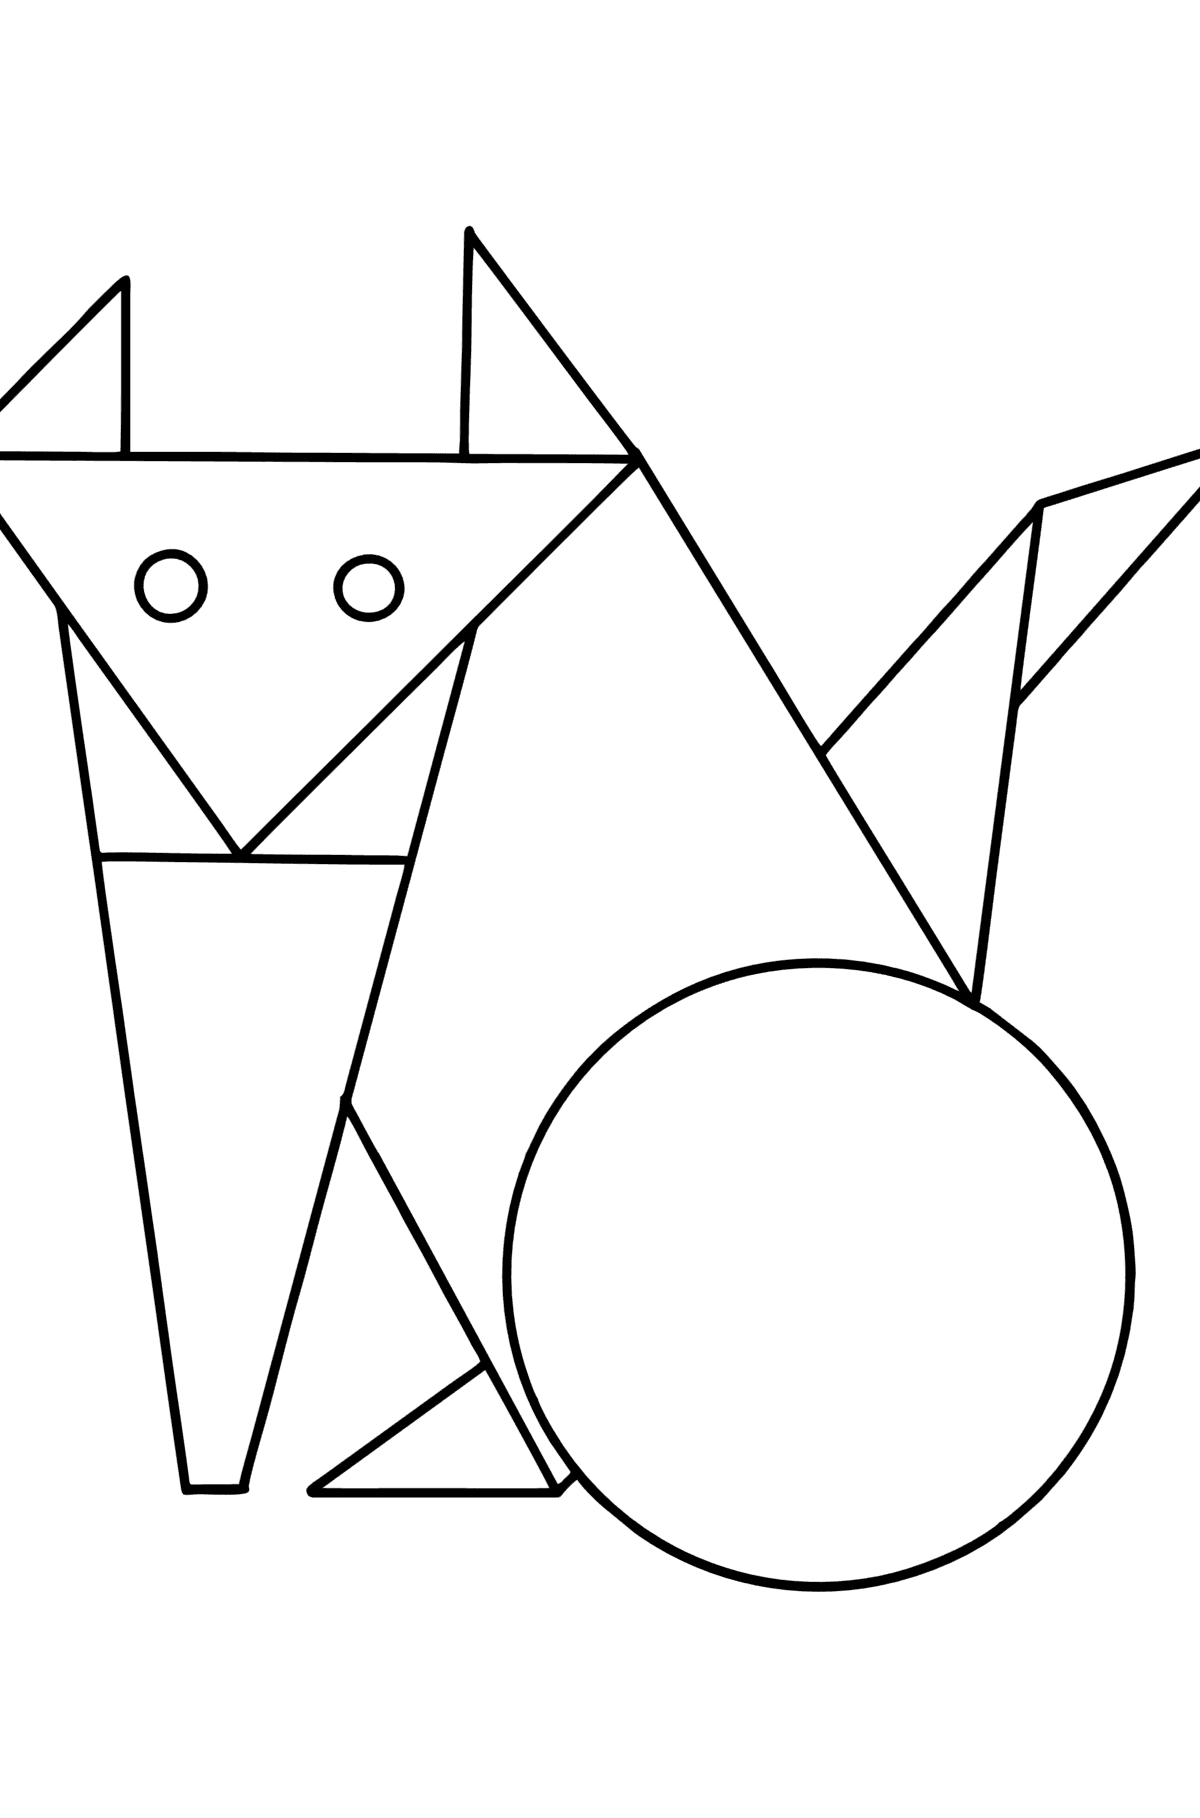 Tegning til fargelegging geometriske former - kattunge - Tegninger til fargelegging for barn